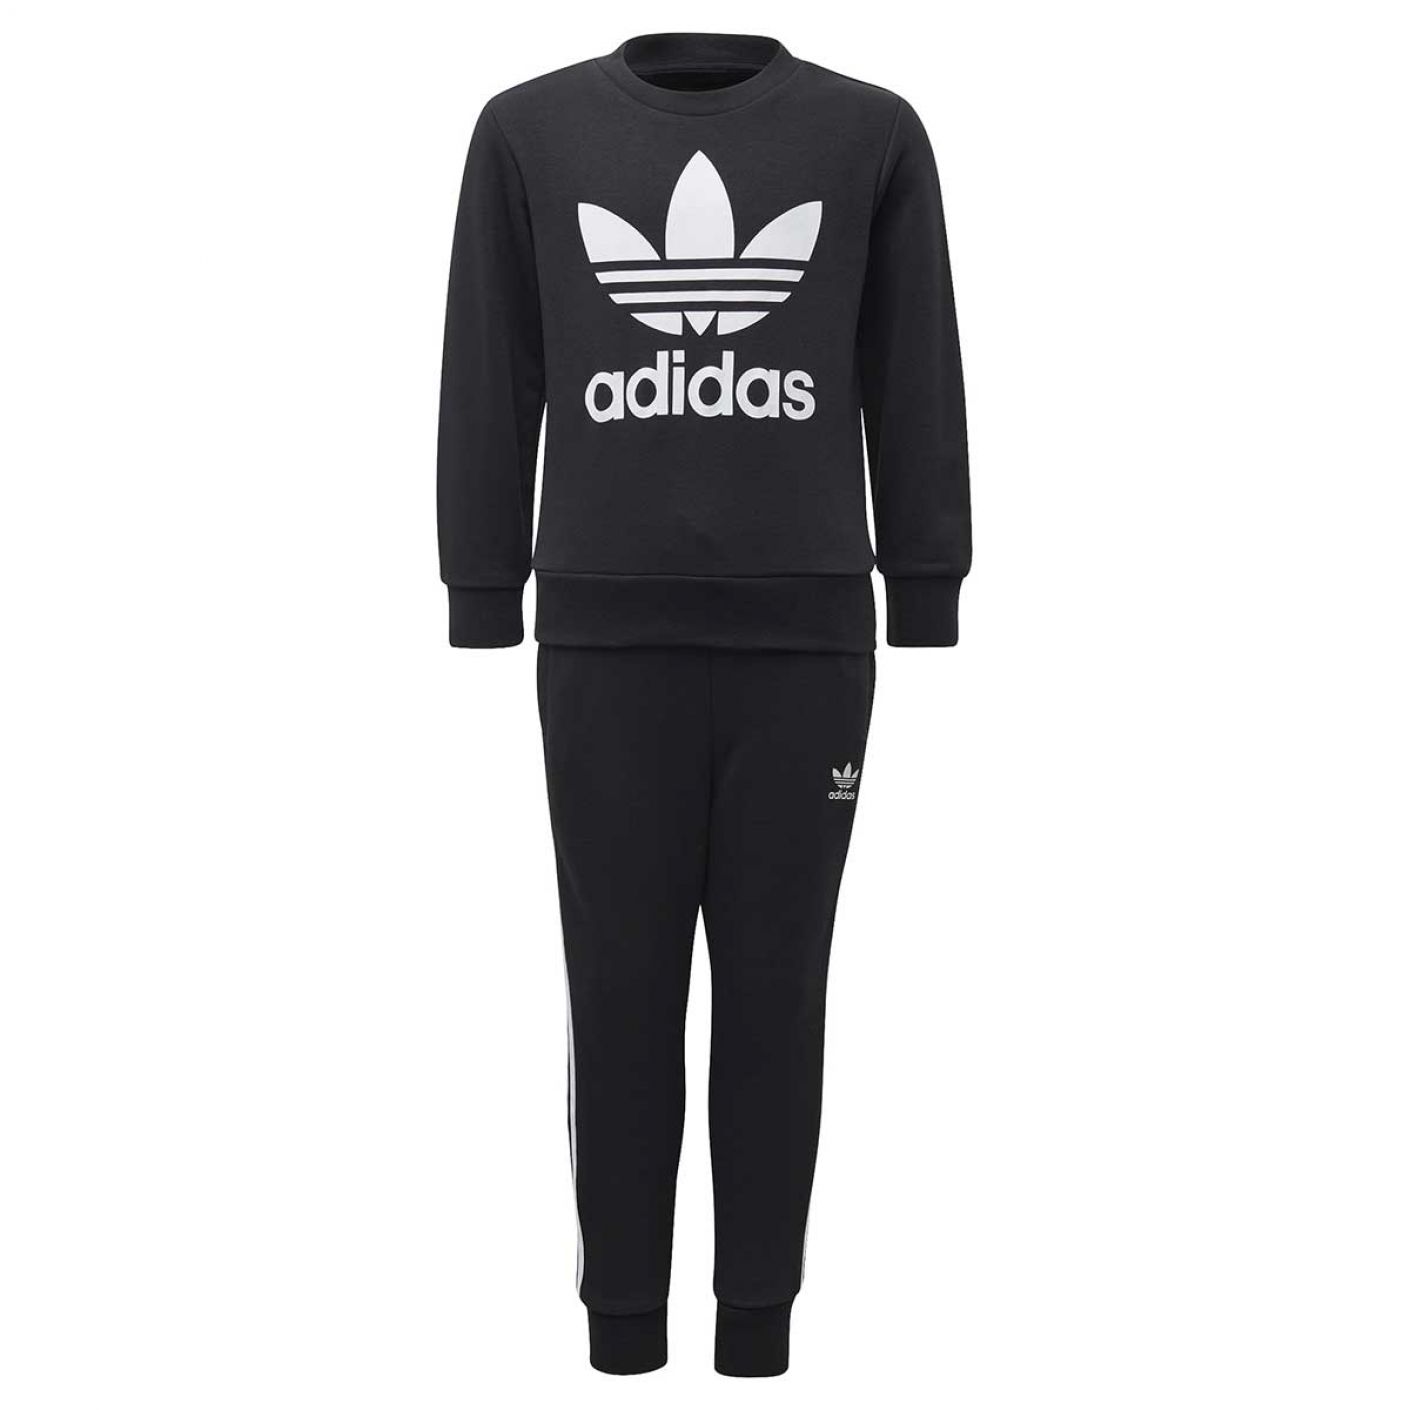 Adidas Crew Set Boy's Suit in Black Sweatshirt